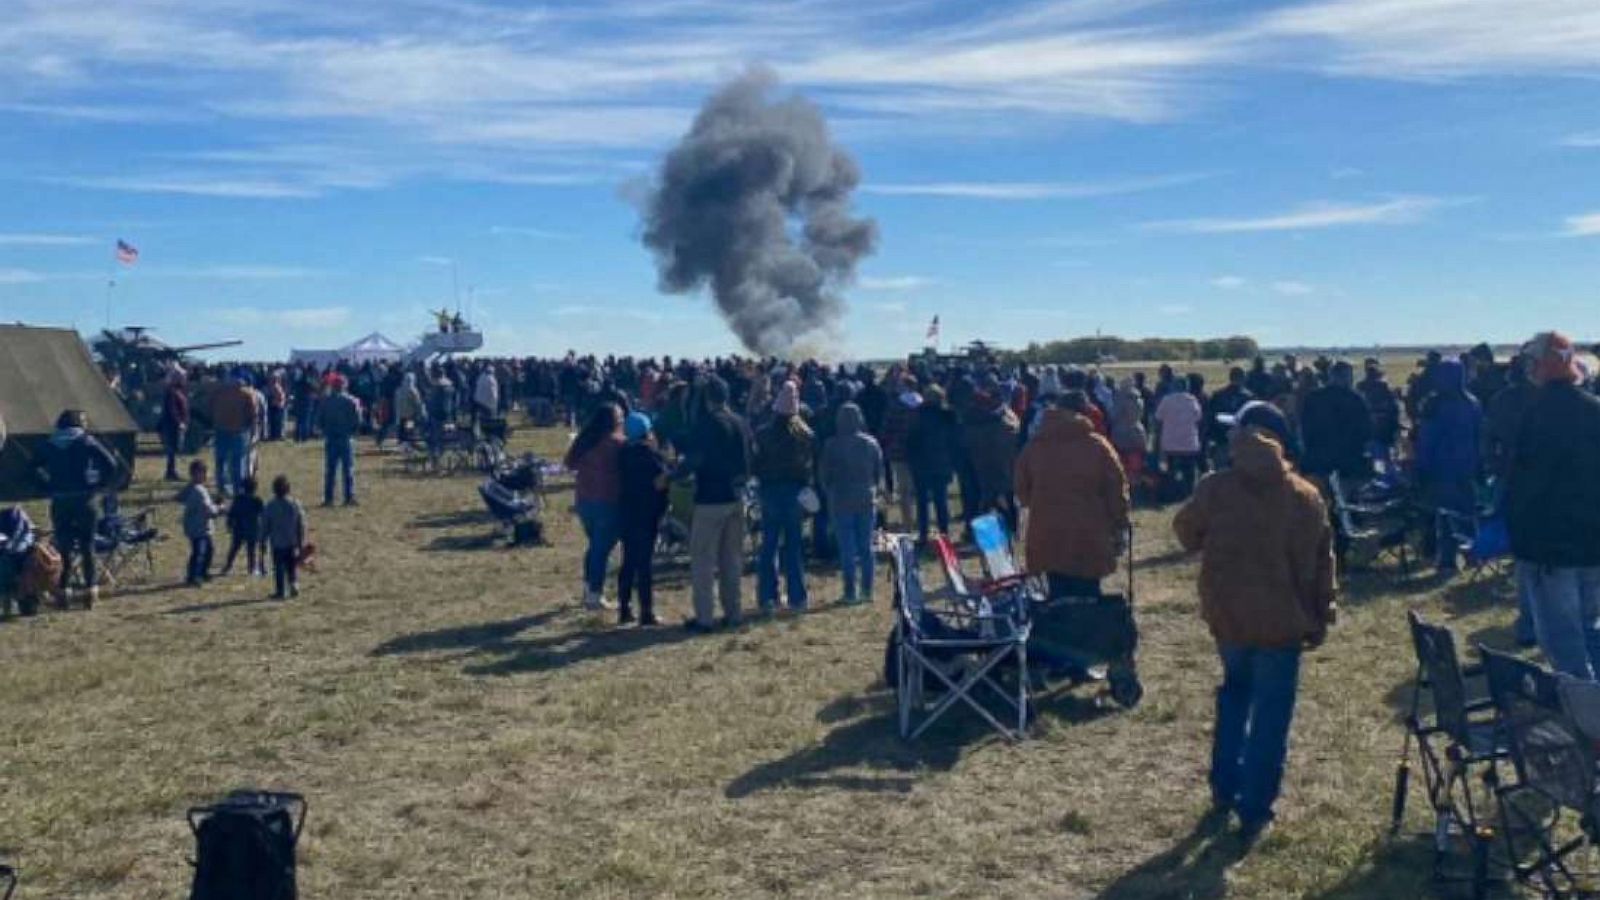 Dallas air show crash